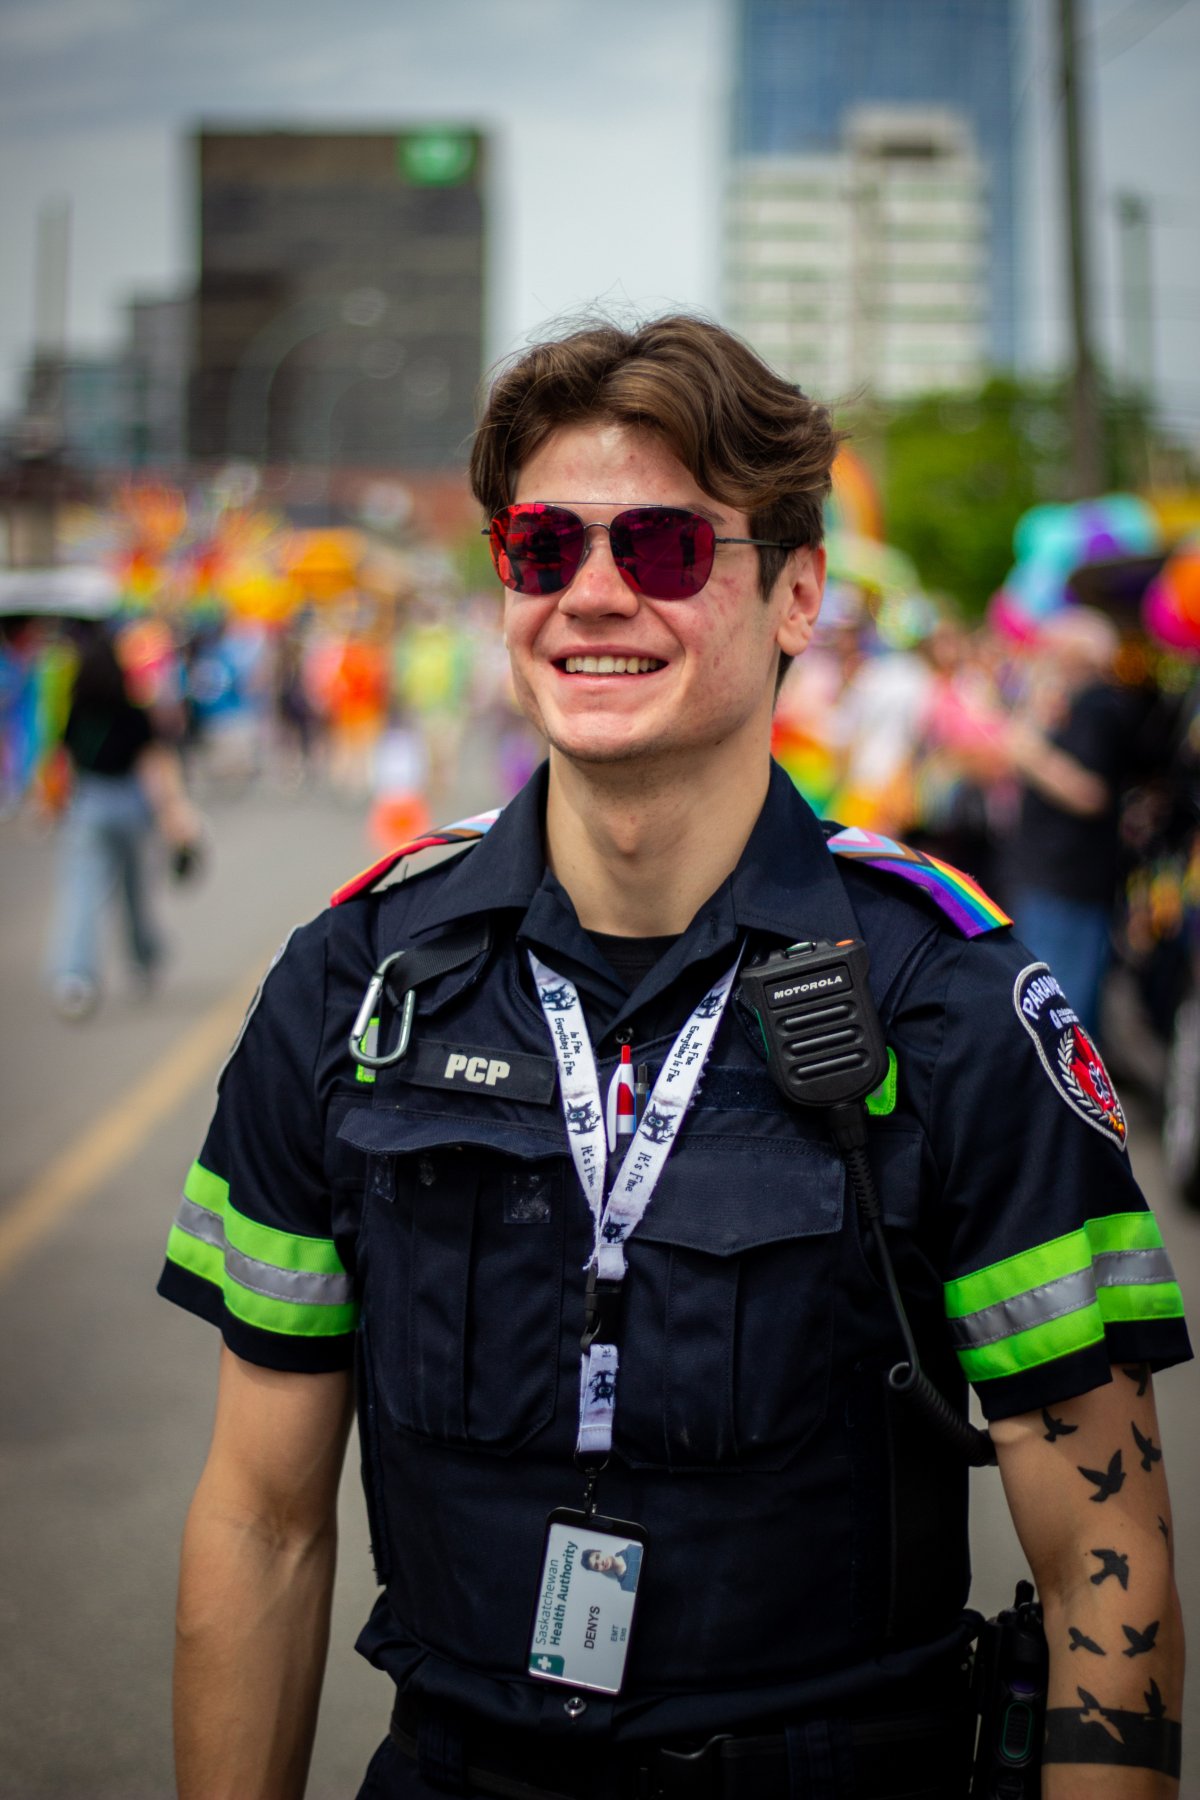 in photos: 2024 queen city pride parade larger than ever